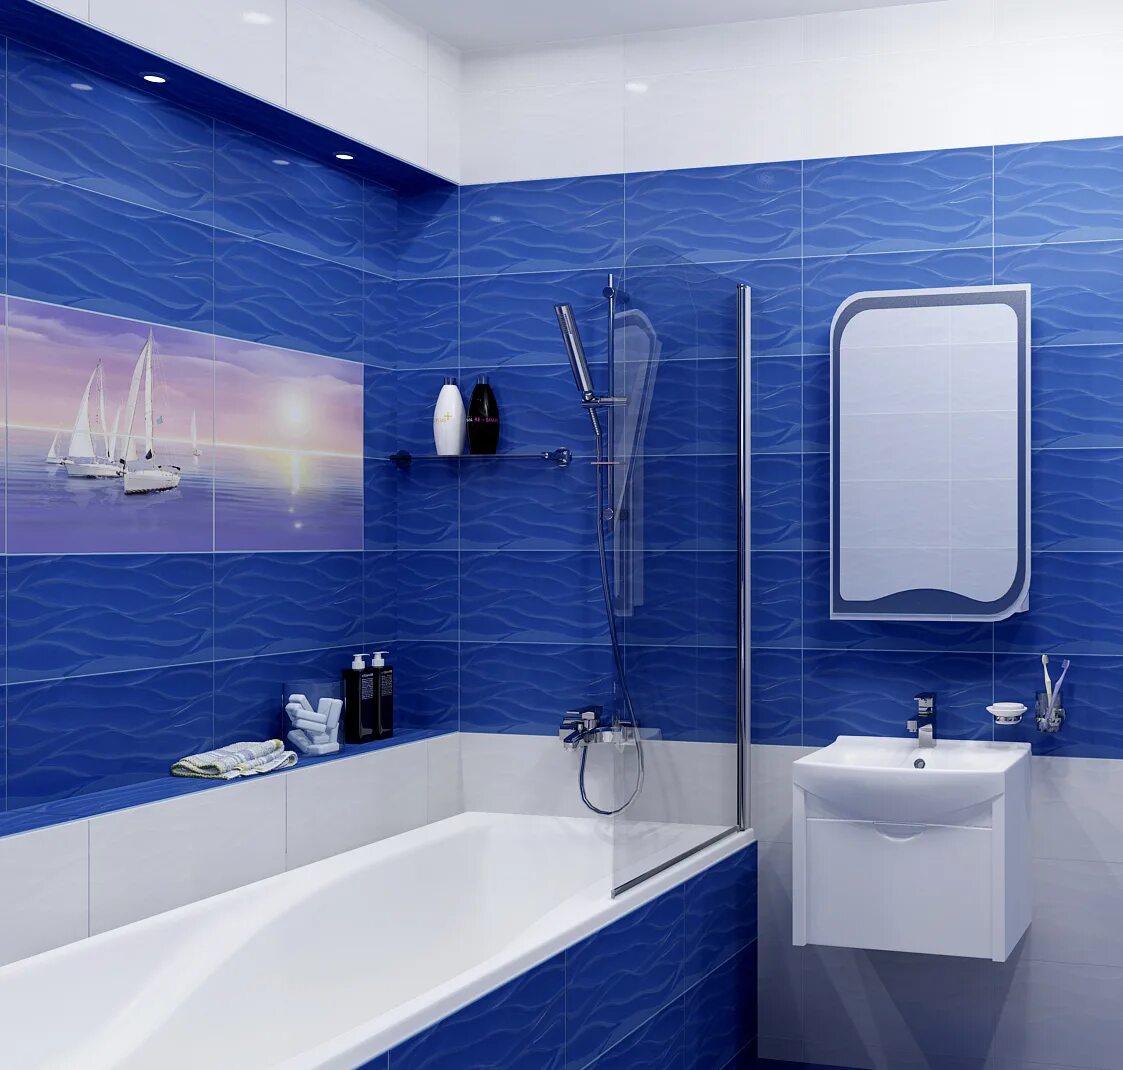 Купить панели для ванной недорого. Синяя ванная комната. Ванная в синем цвете. Плитка для ванной комнаты синяя. Плитка в ванную синяя.